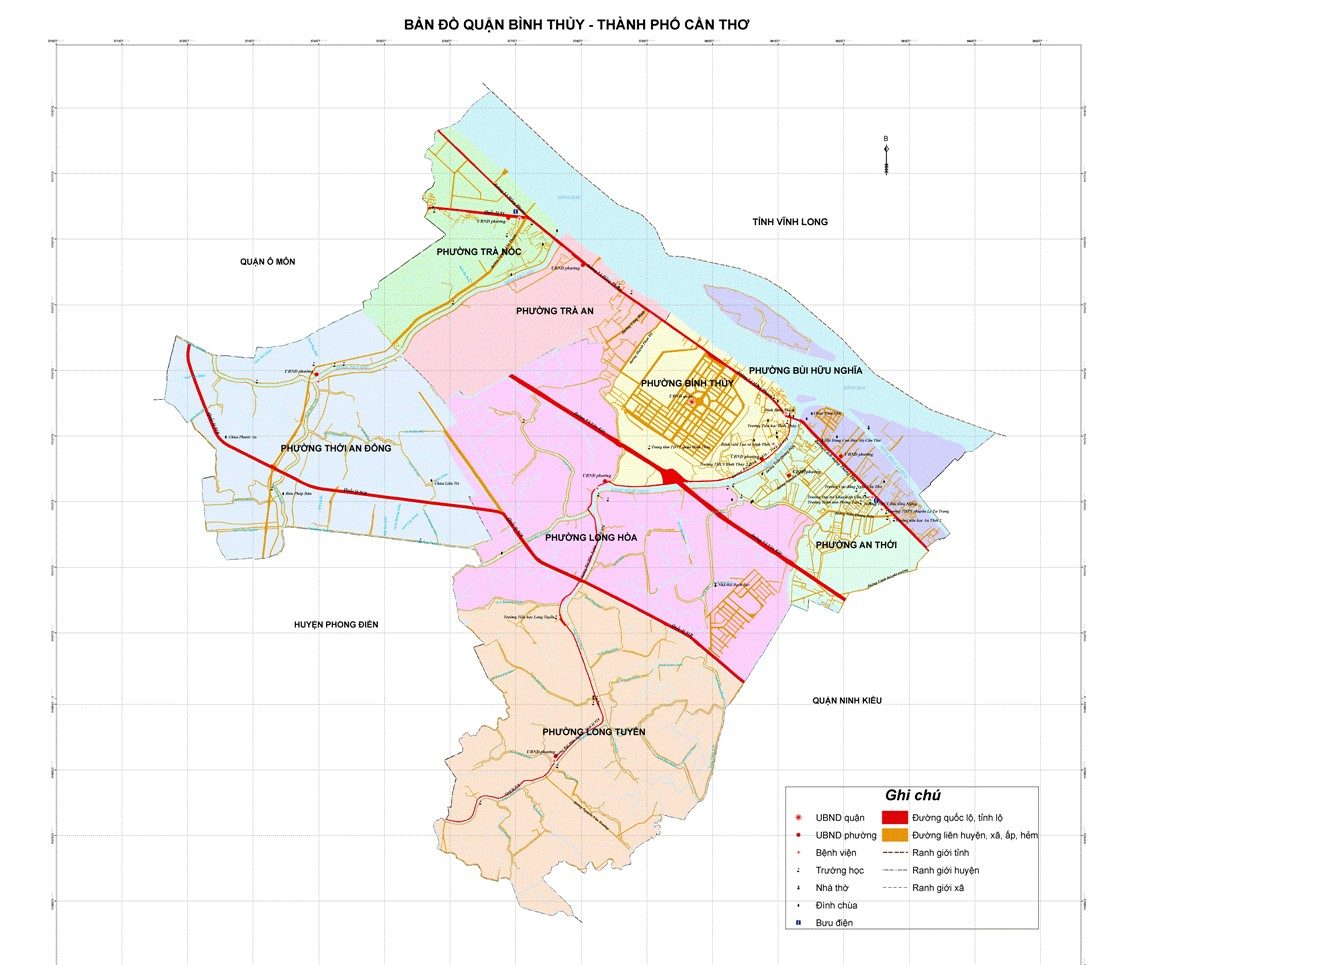 Bản đồ hành chính quận Bình Thủy khổ lớn